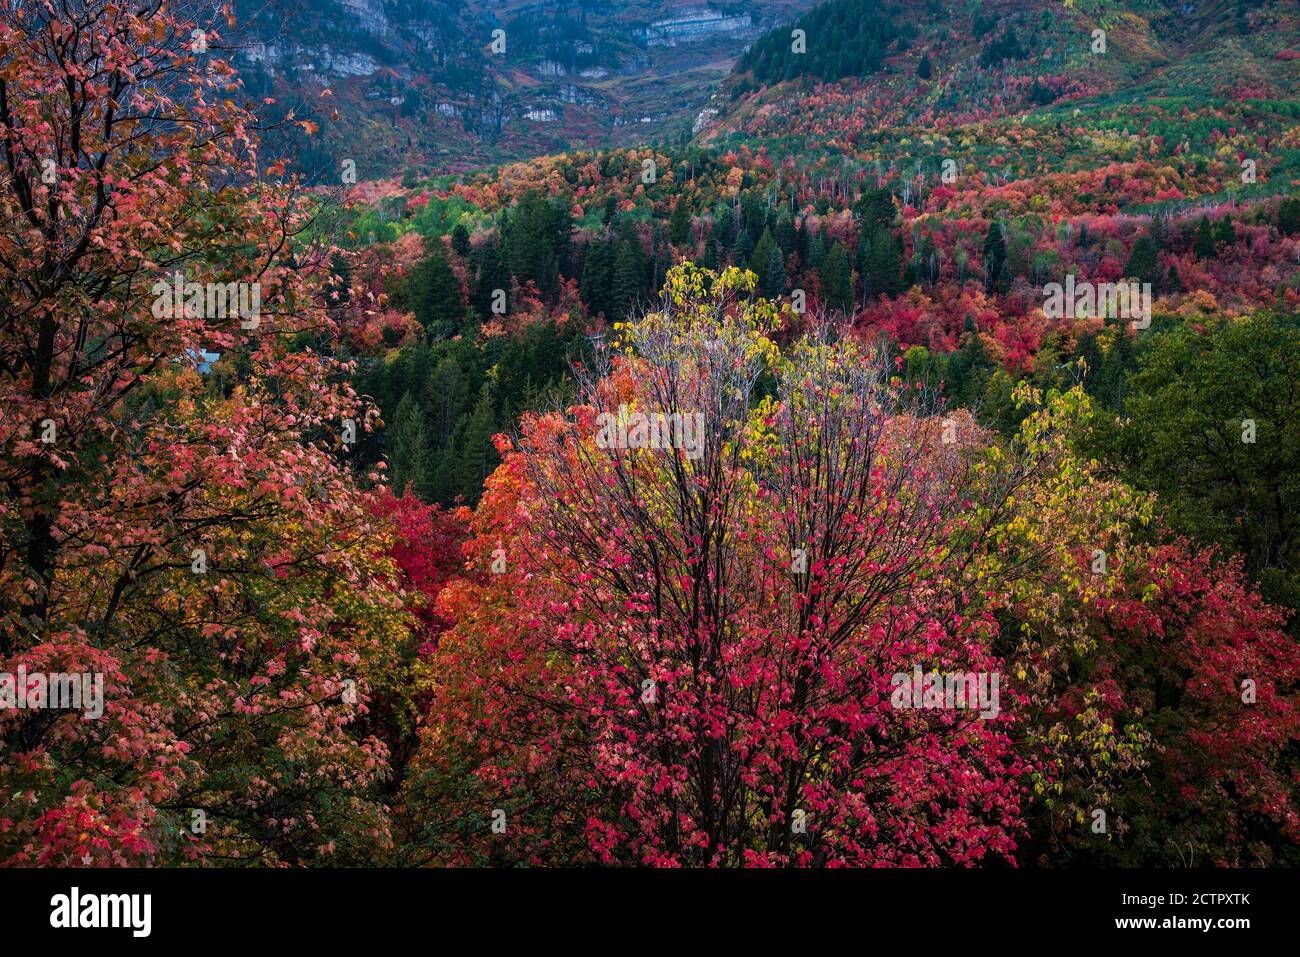 Herbstfarben der berühmten Alpine Loop im American Fork Canyon, Utah, USA. Die schmale und kurvenreiche Straße von "The Loop" bietet eine dramatische Fallkulisse. Stockfoto